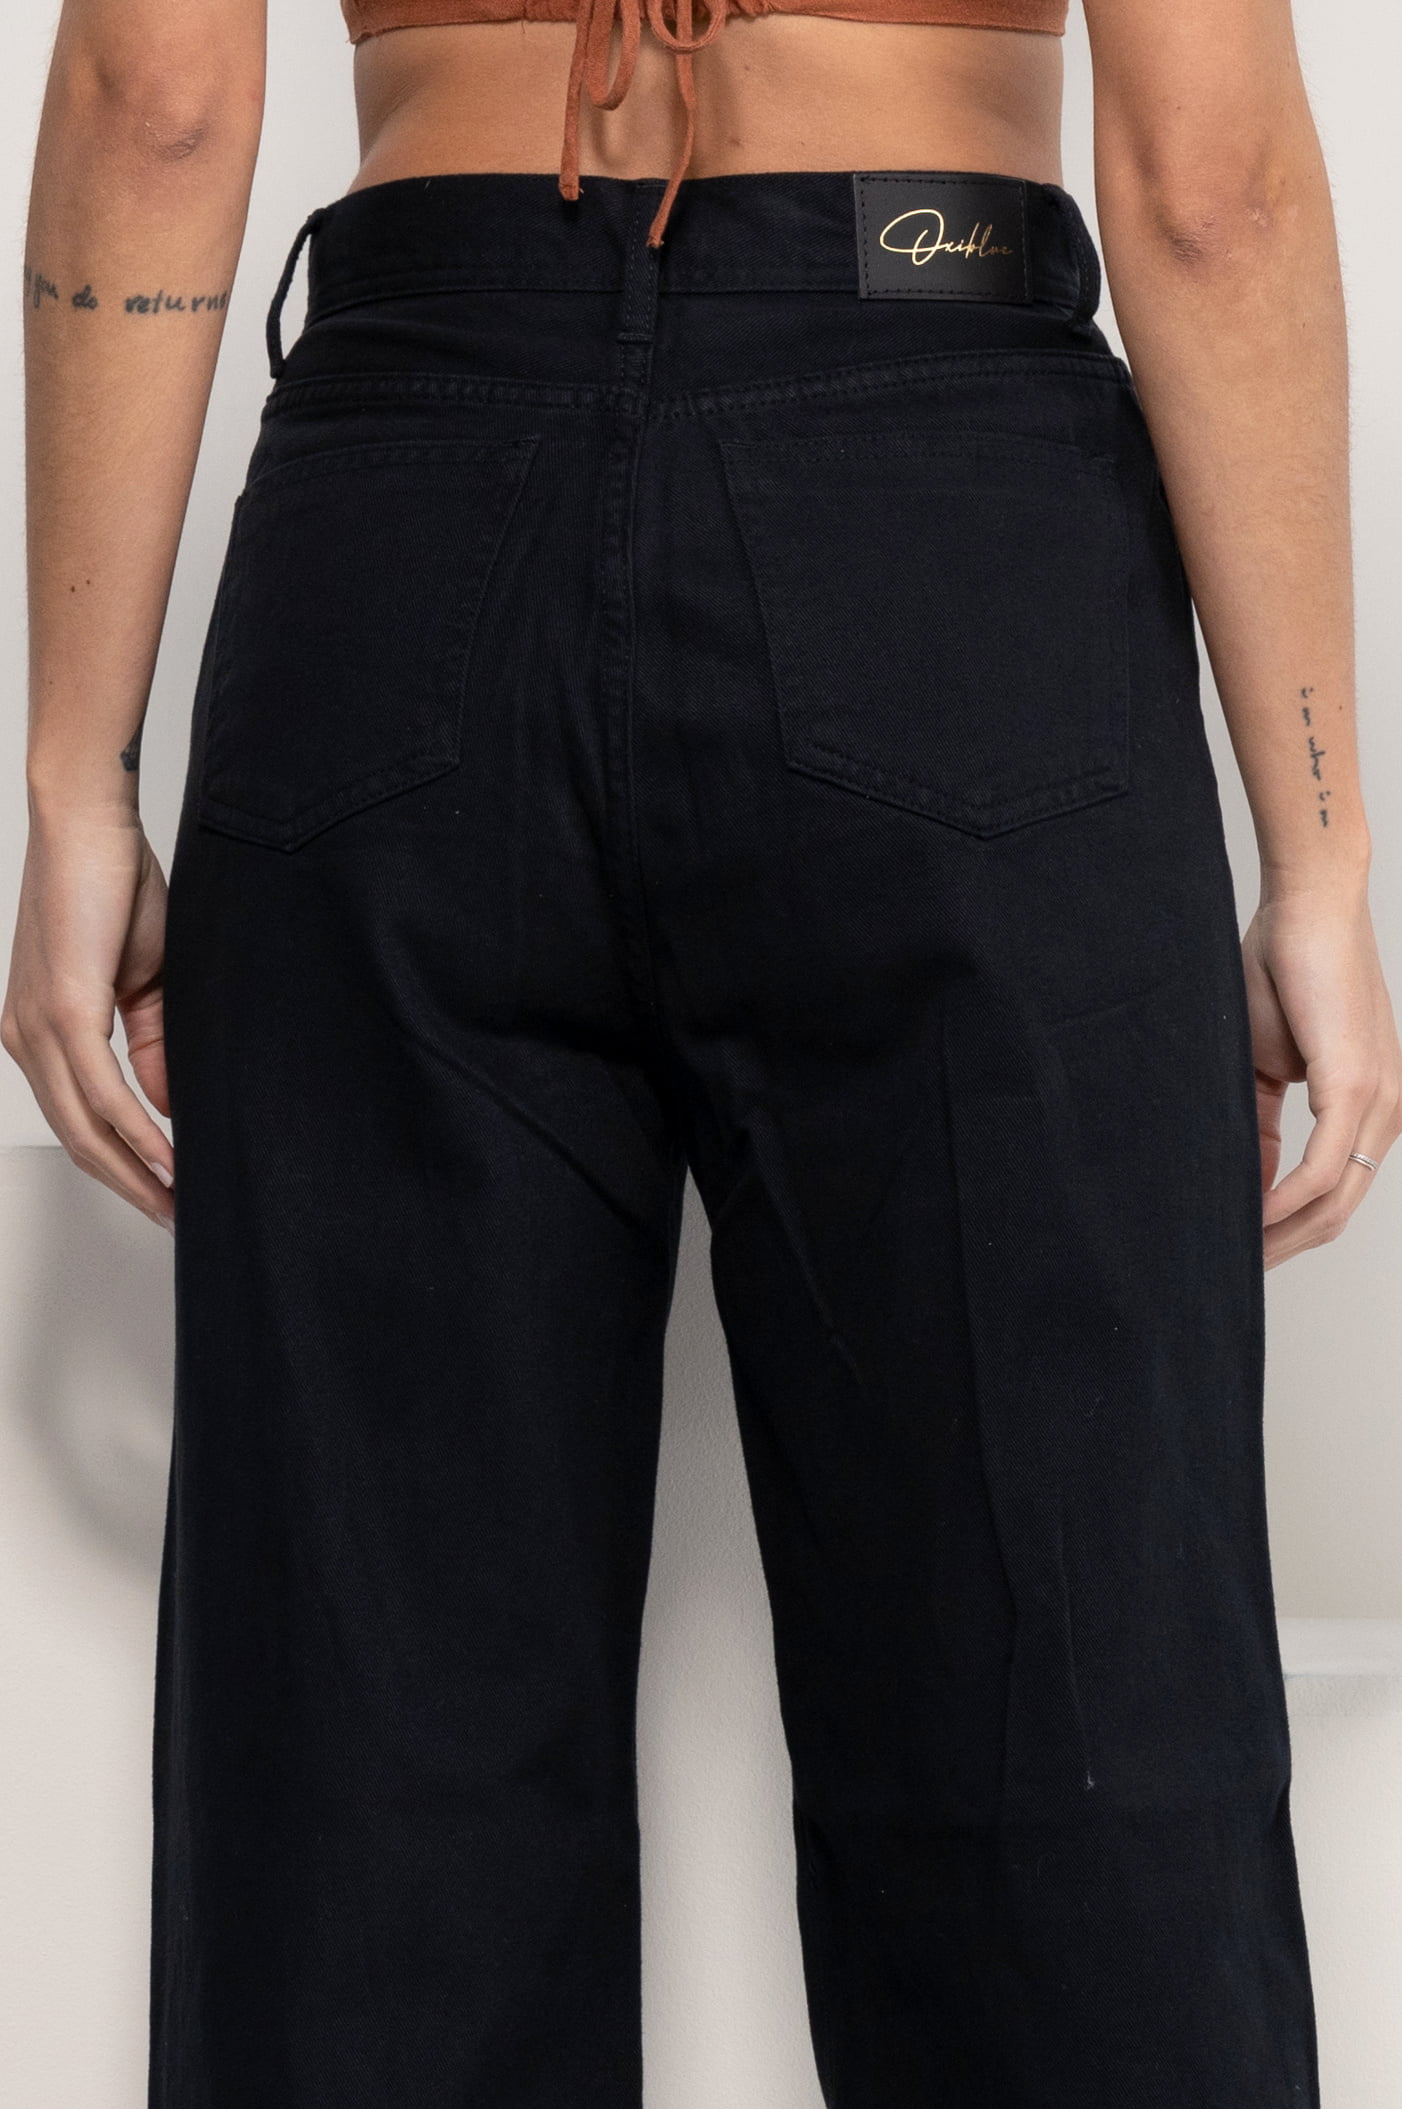 Trazo de pantalón femenino básico, levantacola, bermuda, short